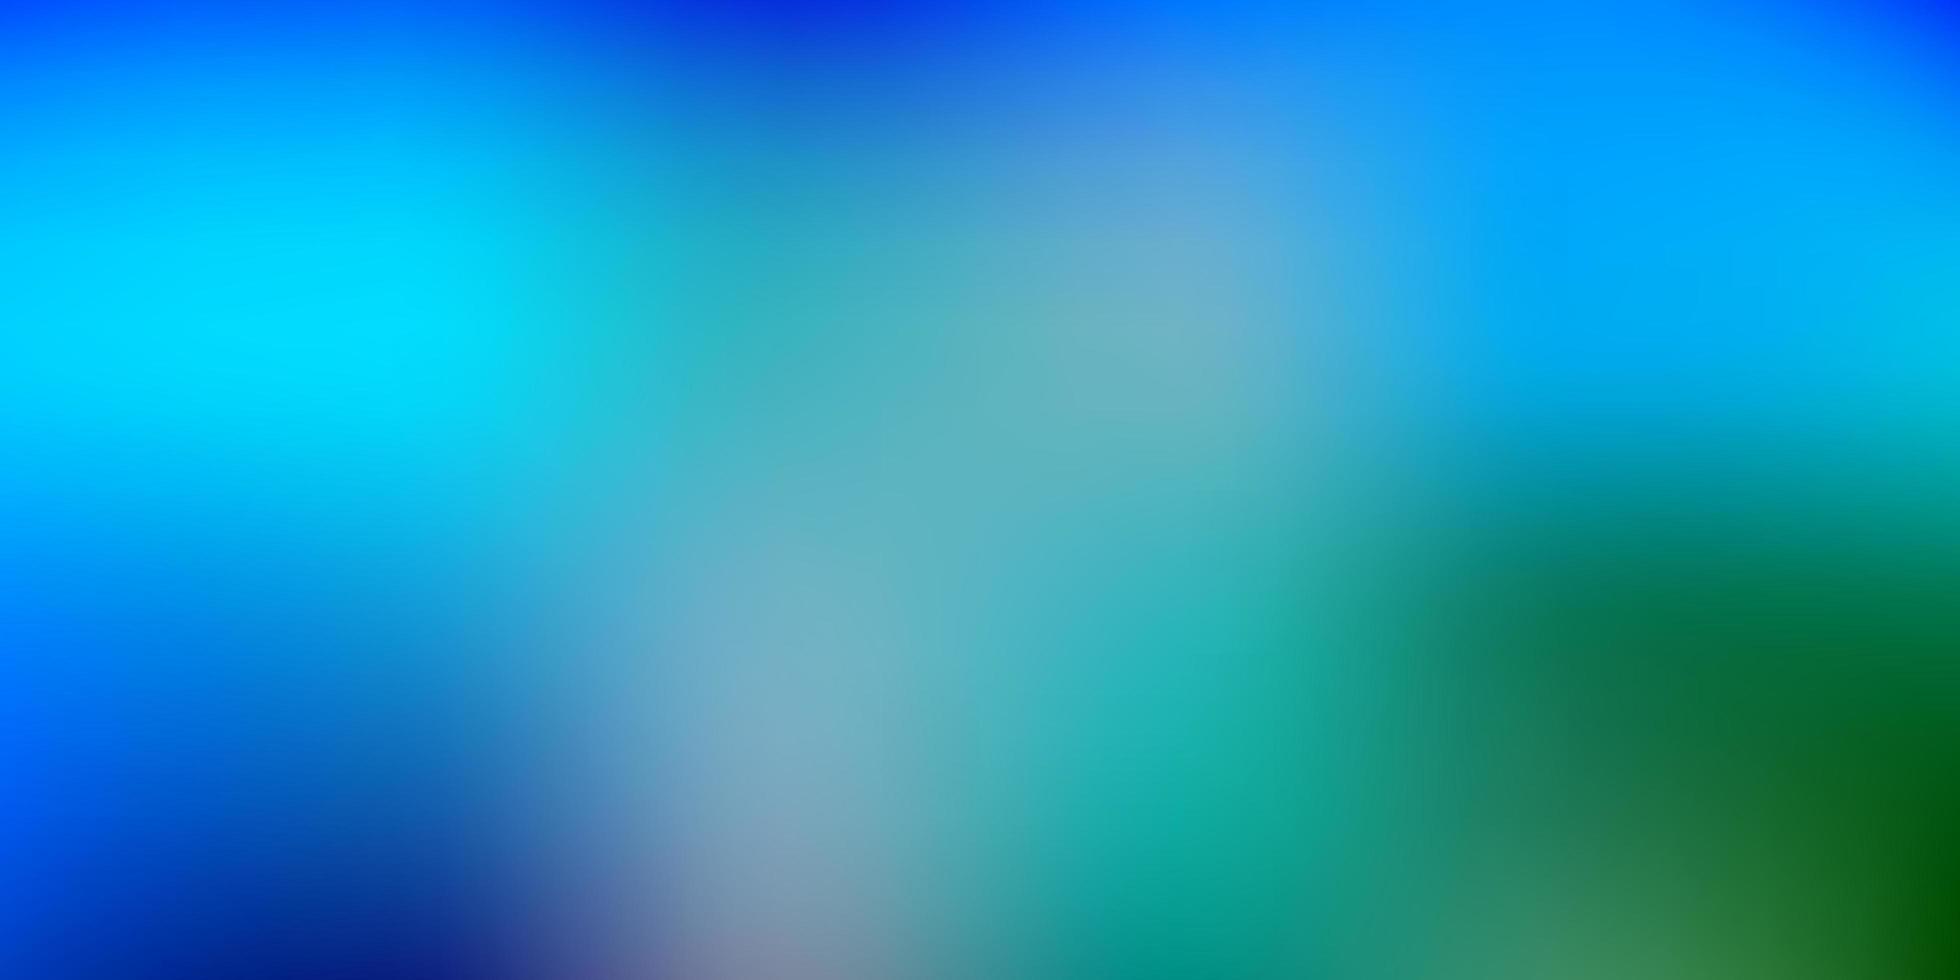 ljusblå, grön vektor oskärpa bakgrund.